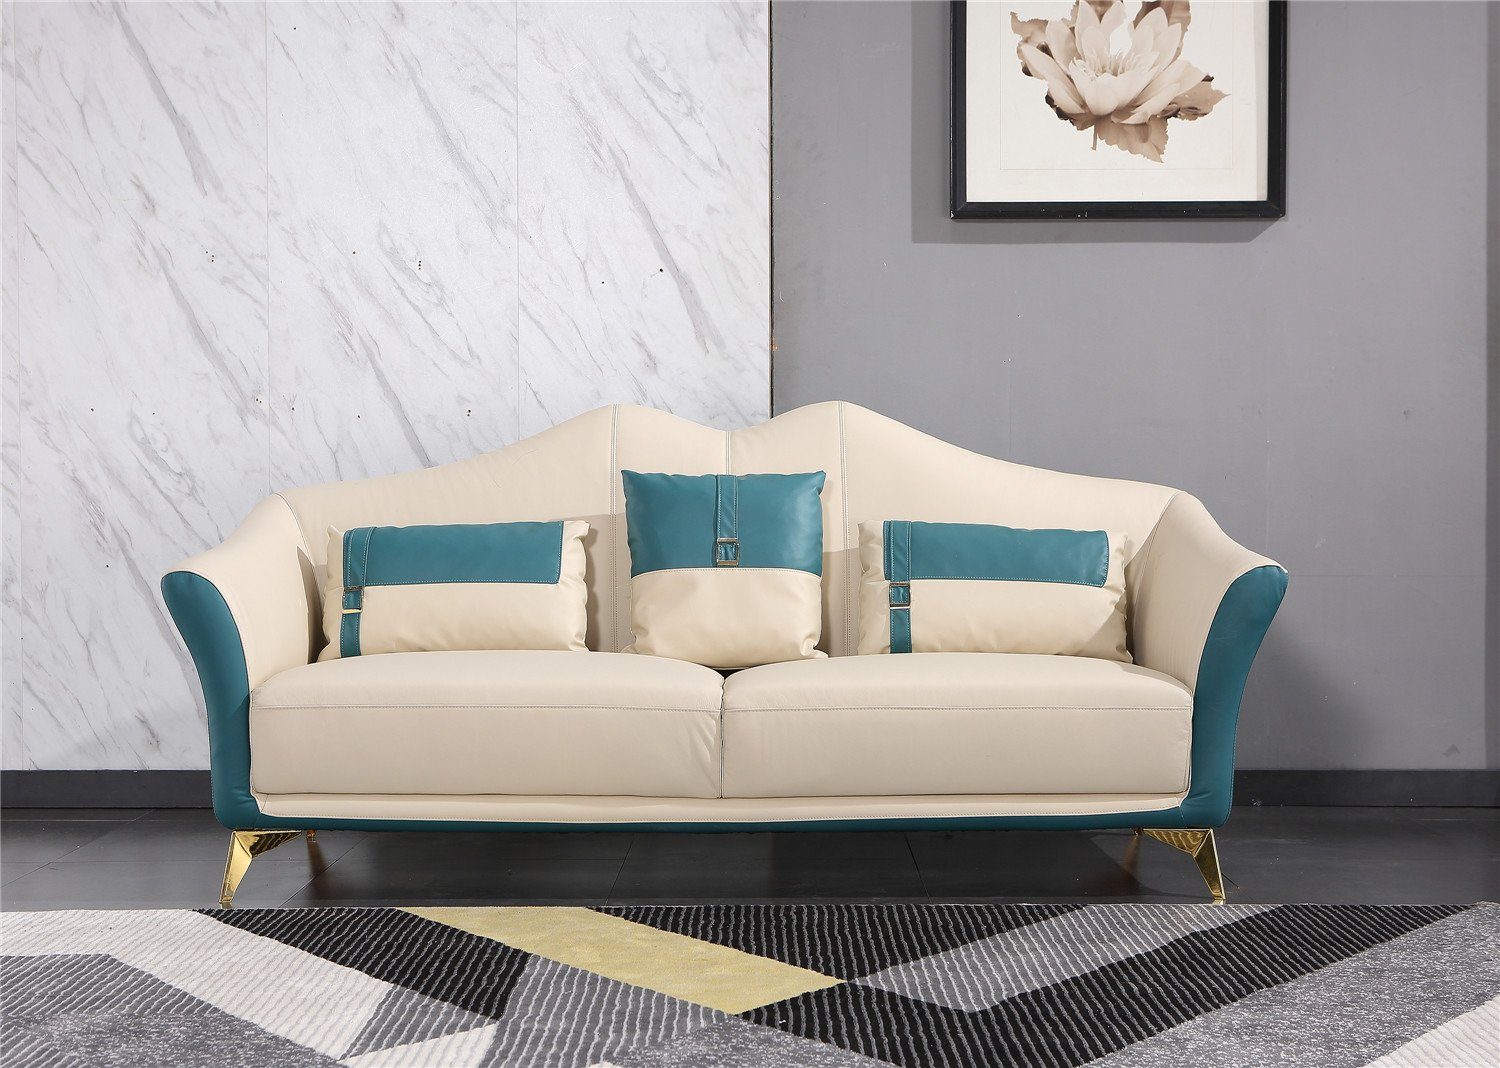 JVmoebel Sofa Orange-weiße Sofagarnitur 3+1+1 Sitzer Garnituren Moderne Sofas, Made in Europe Blau